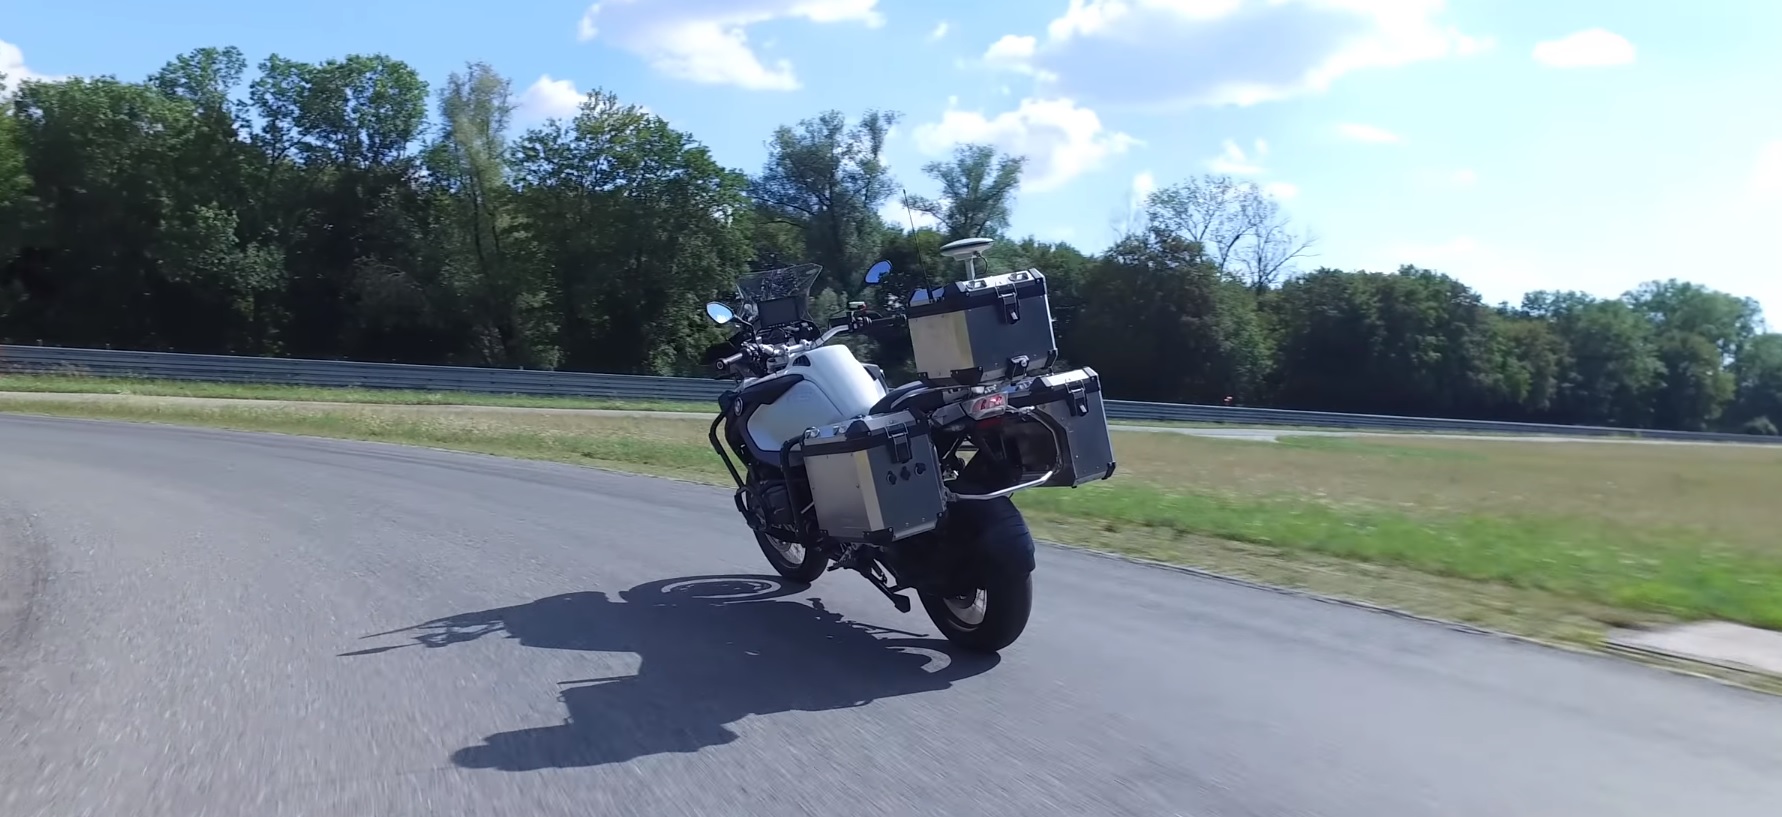 A BMW criou um zangão moto para o teste de novos sistemas de segurança